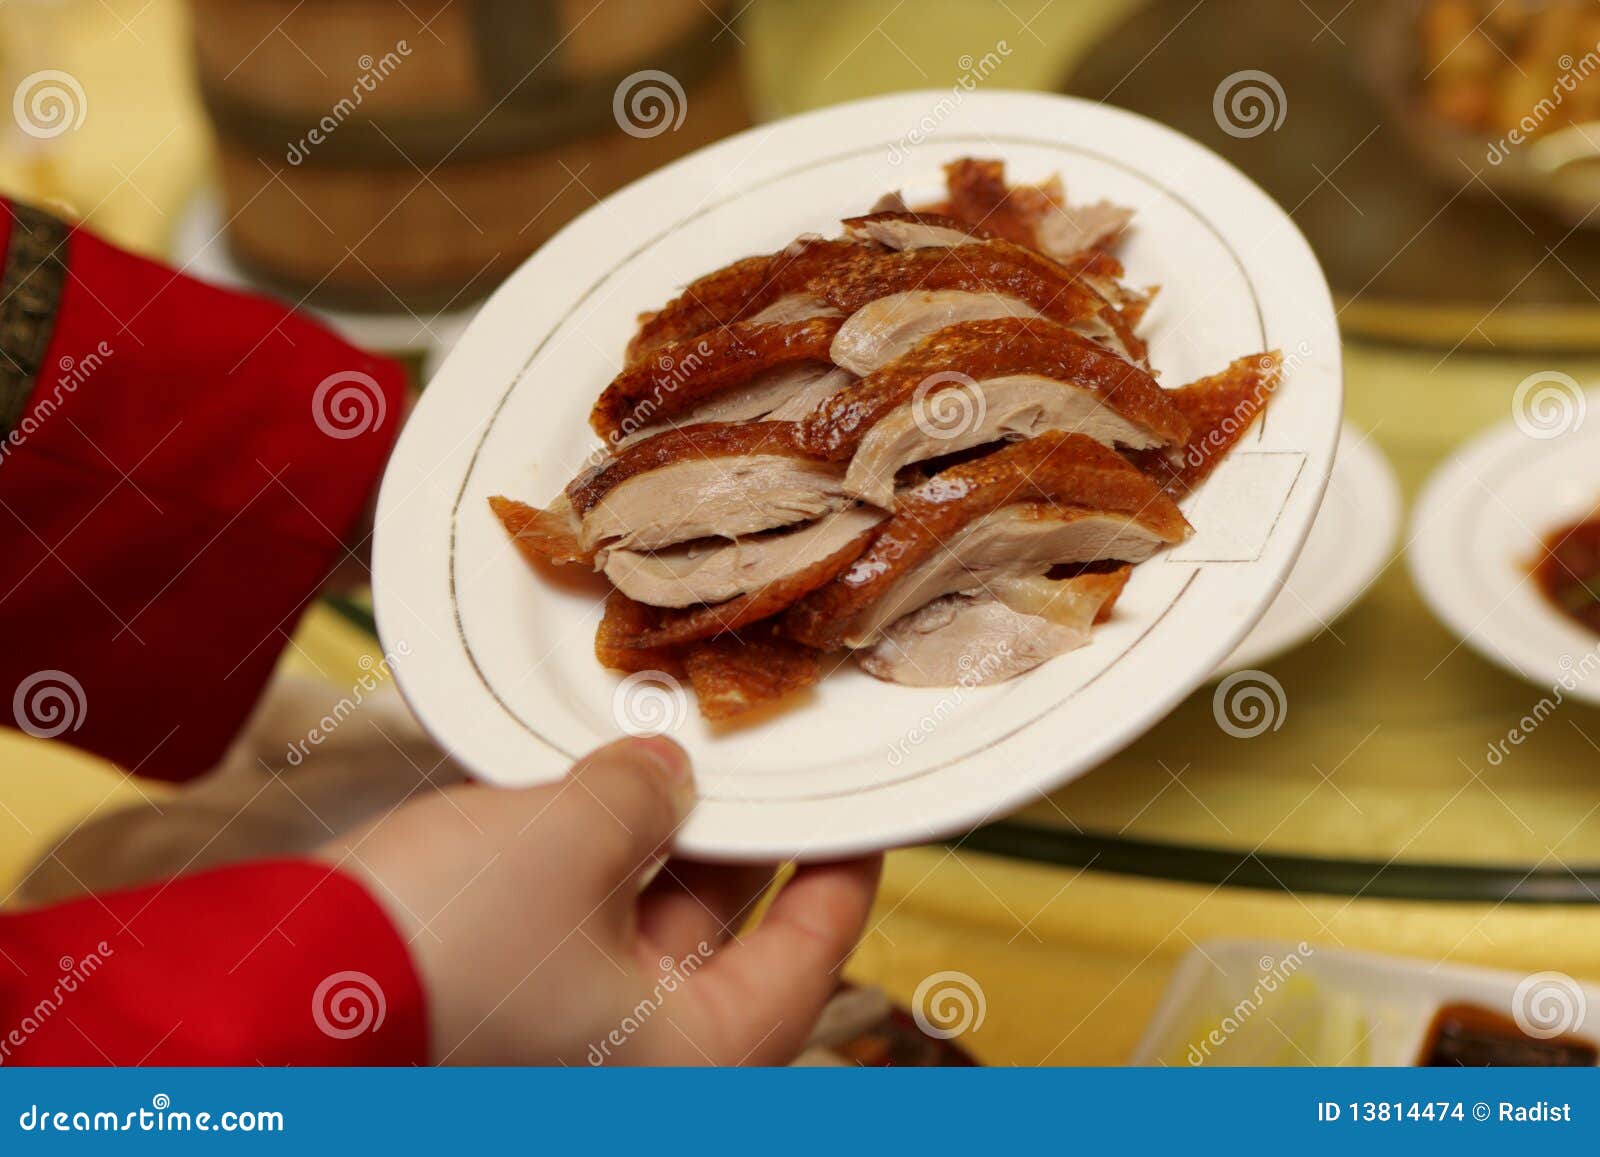 Peking-Ente Als Hauptgericht Stockfoto - Bild von kultur, mittagessen ...